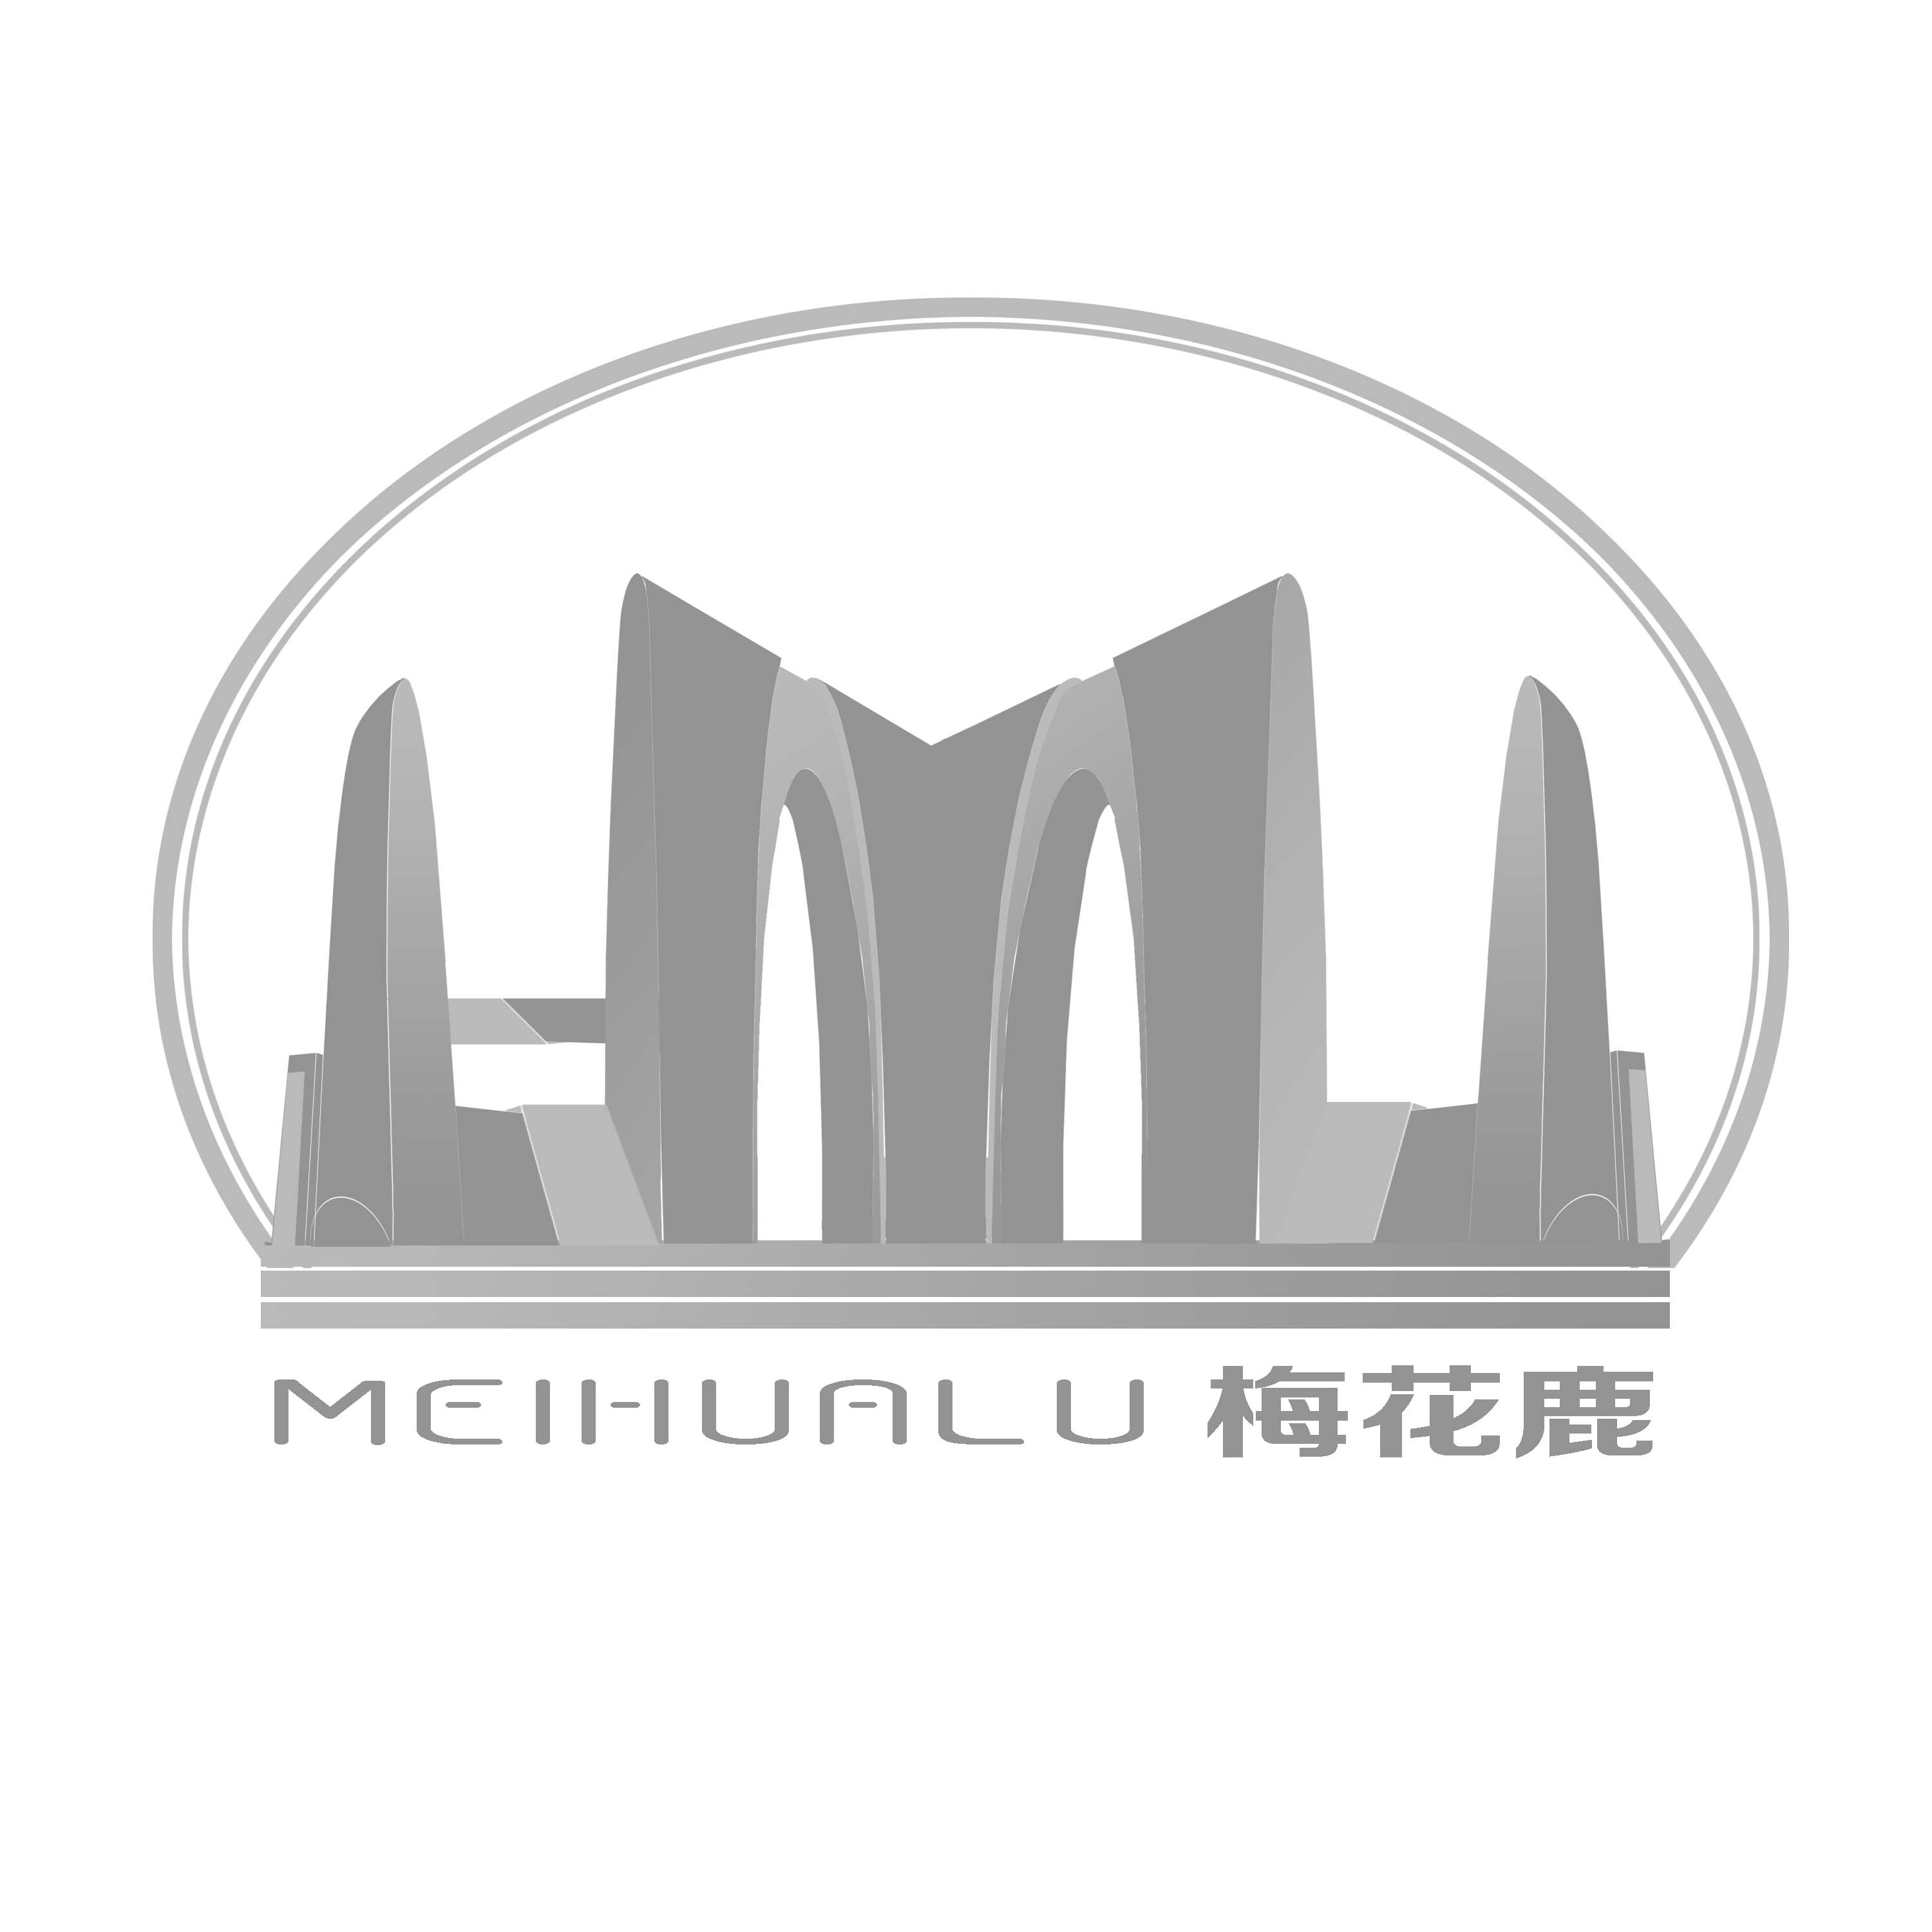 梅花鹿meihualu logo设计